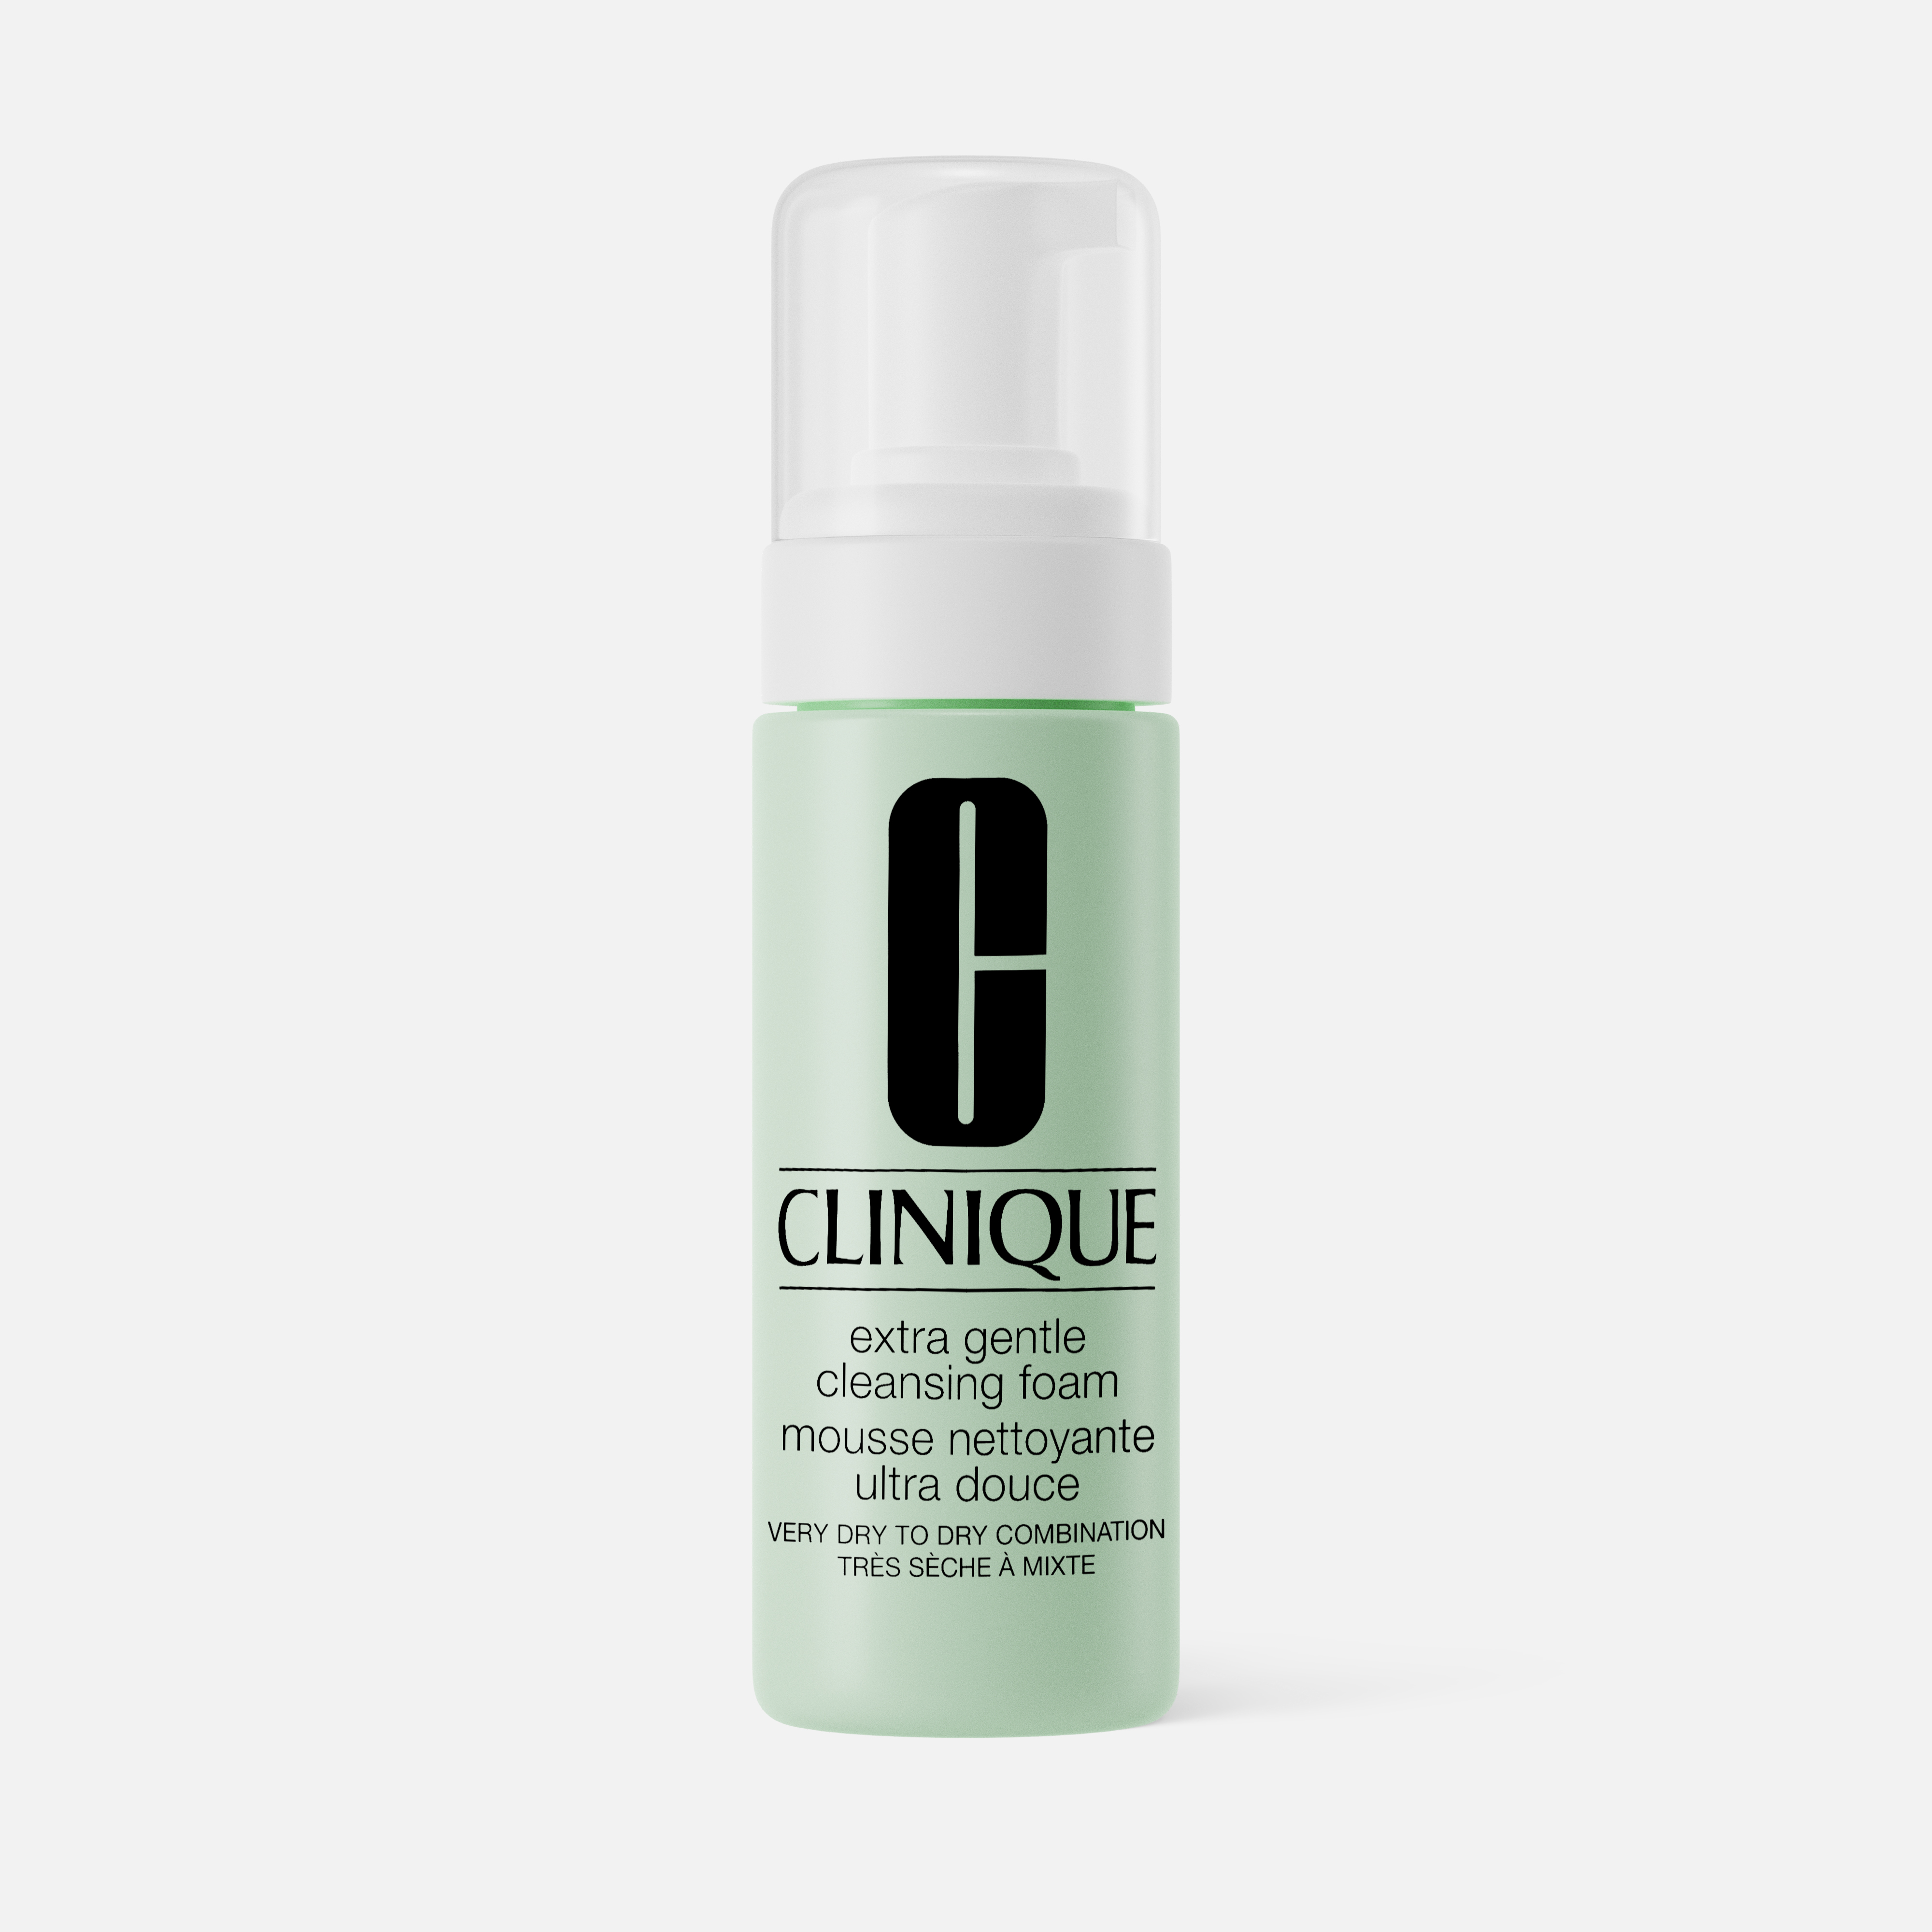 Пенка для умывания CLINIQUE Extra Gentle Cleansing Foam для чувствительной кожи, 125 мл gentle cleansing foam